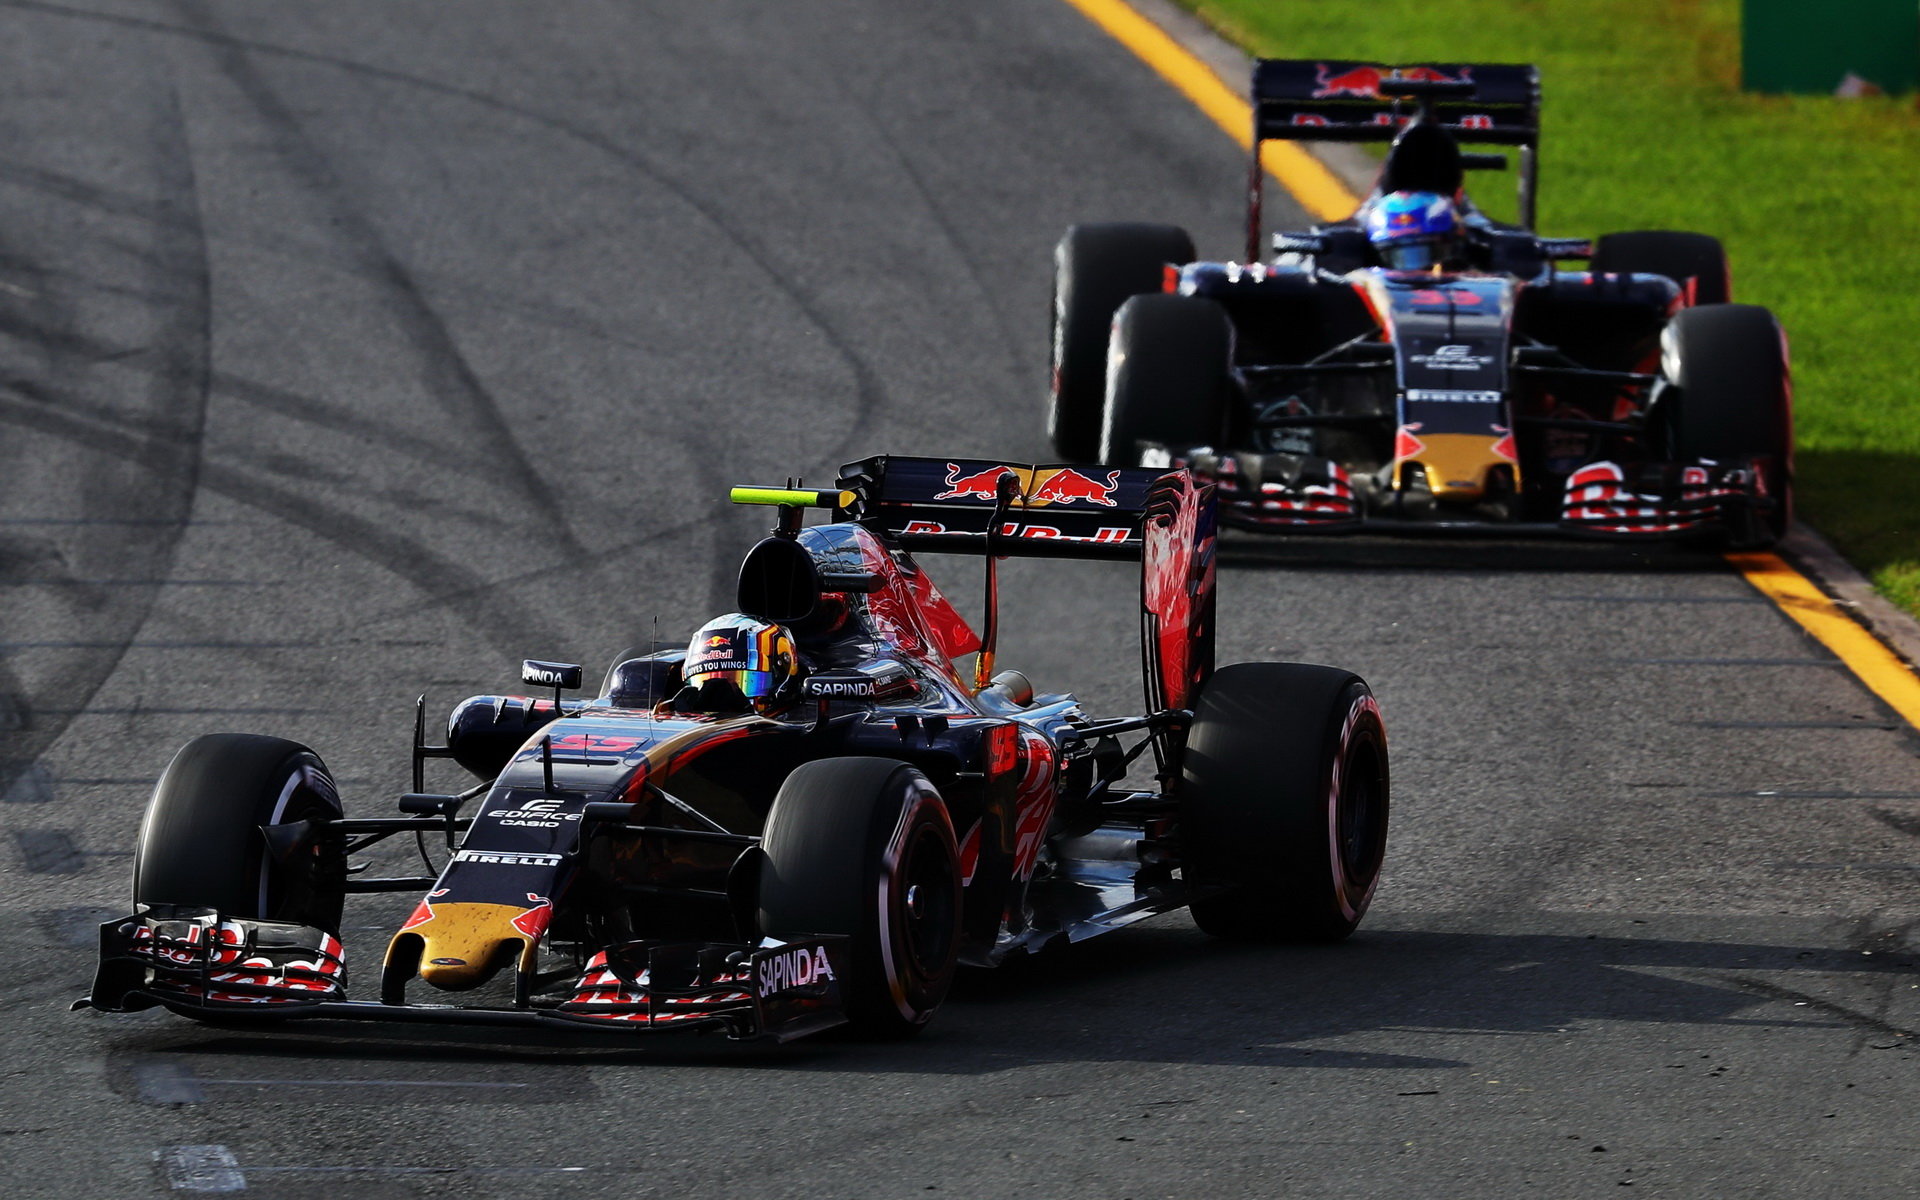 Úvodní závod sezóny byl pro oba piloty Toro Rosso značně vyhecovaný